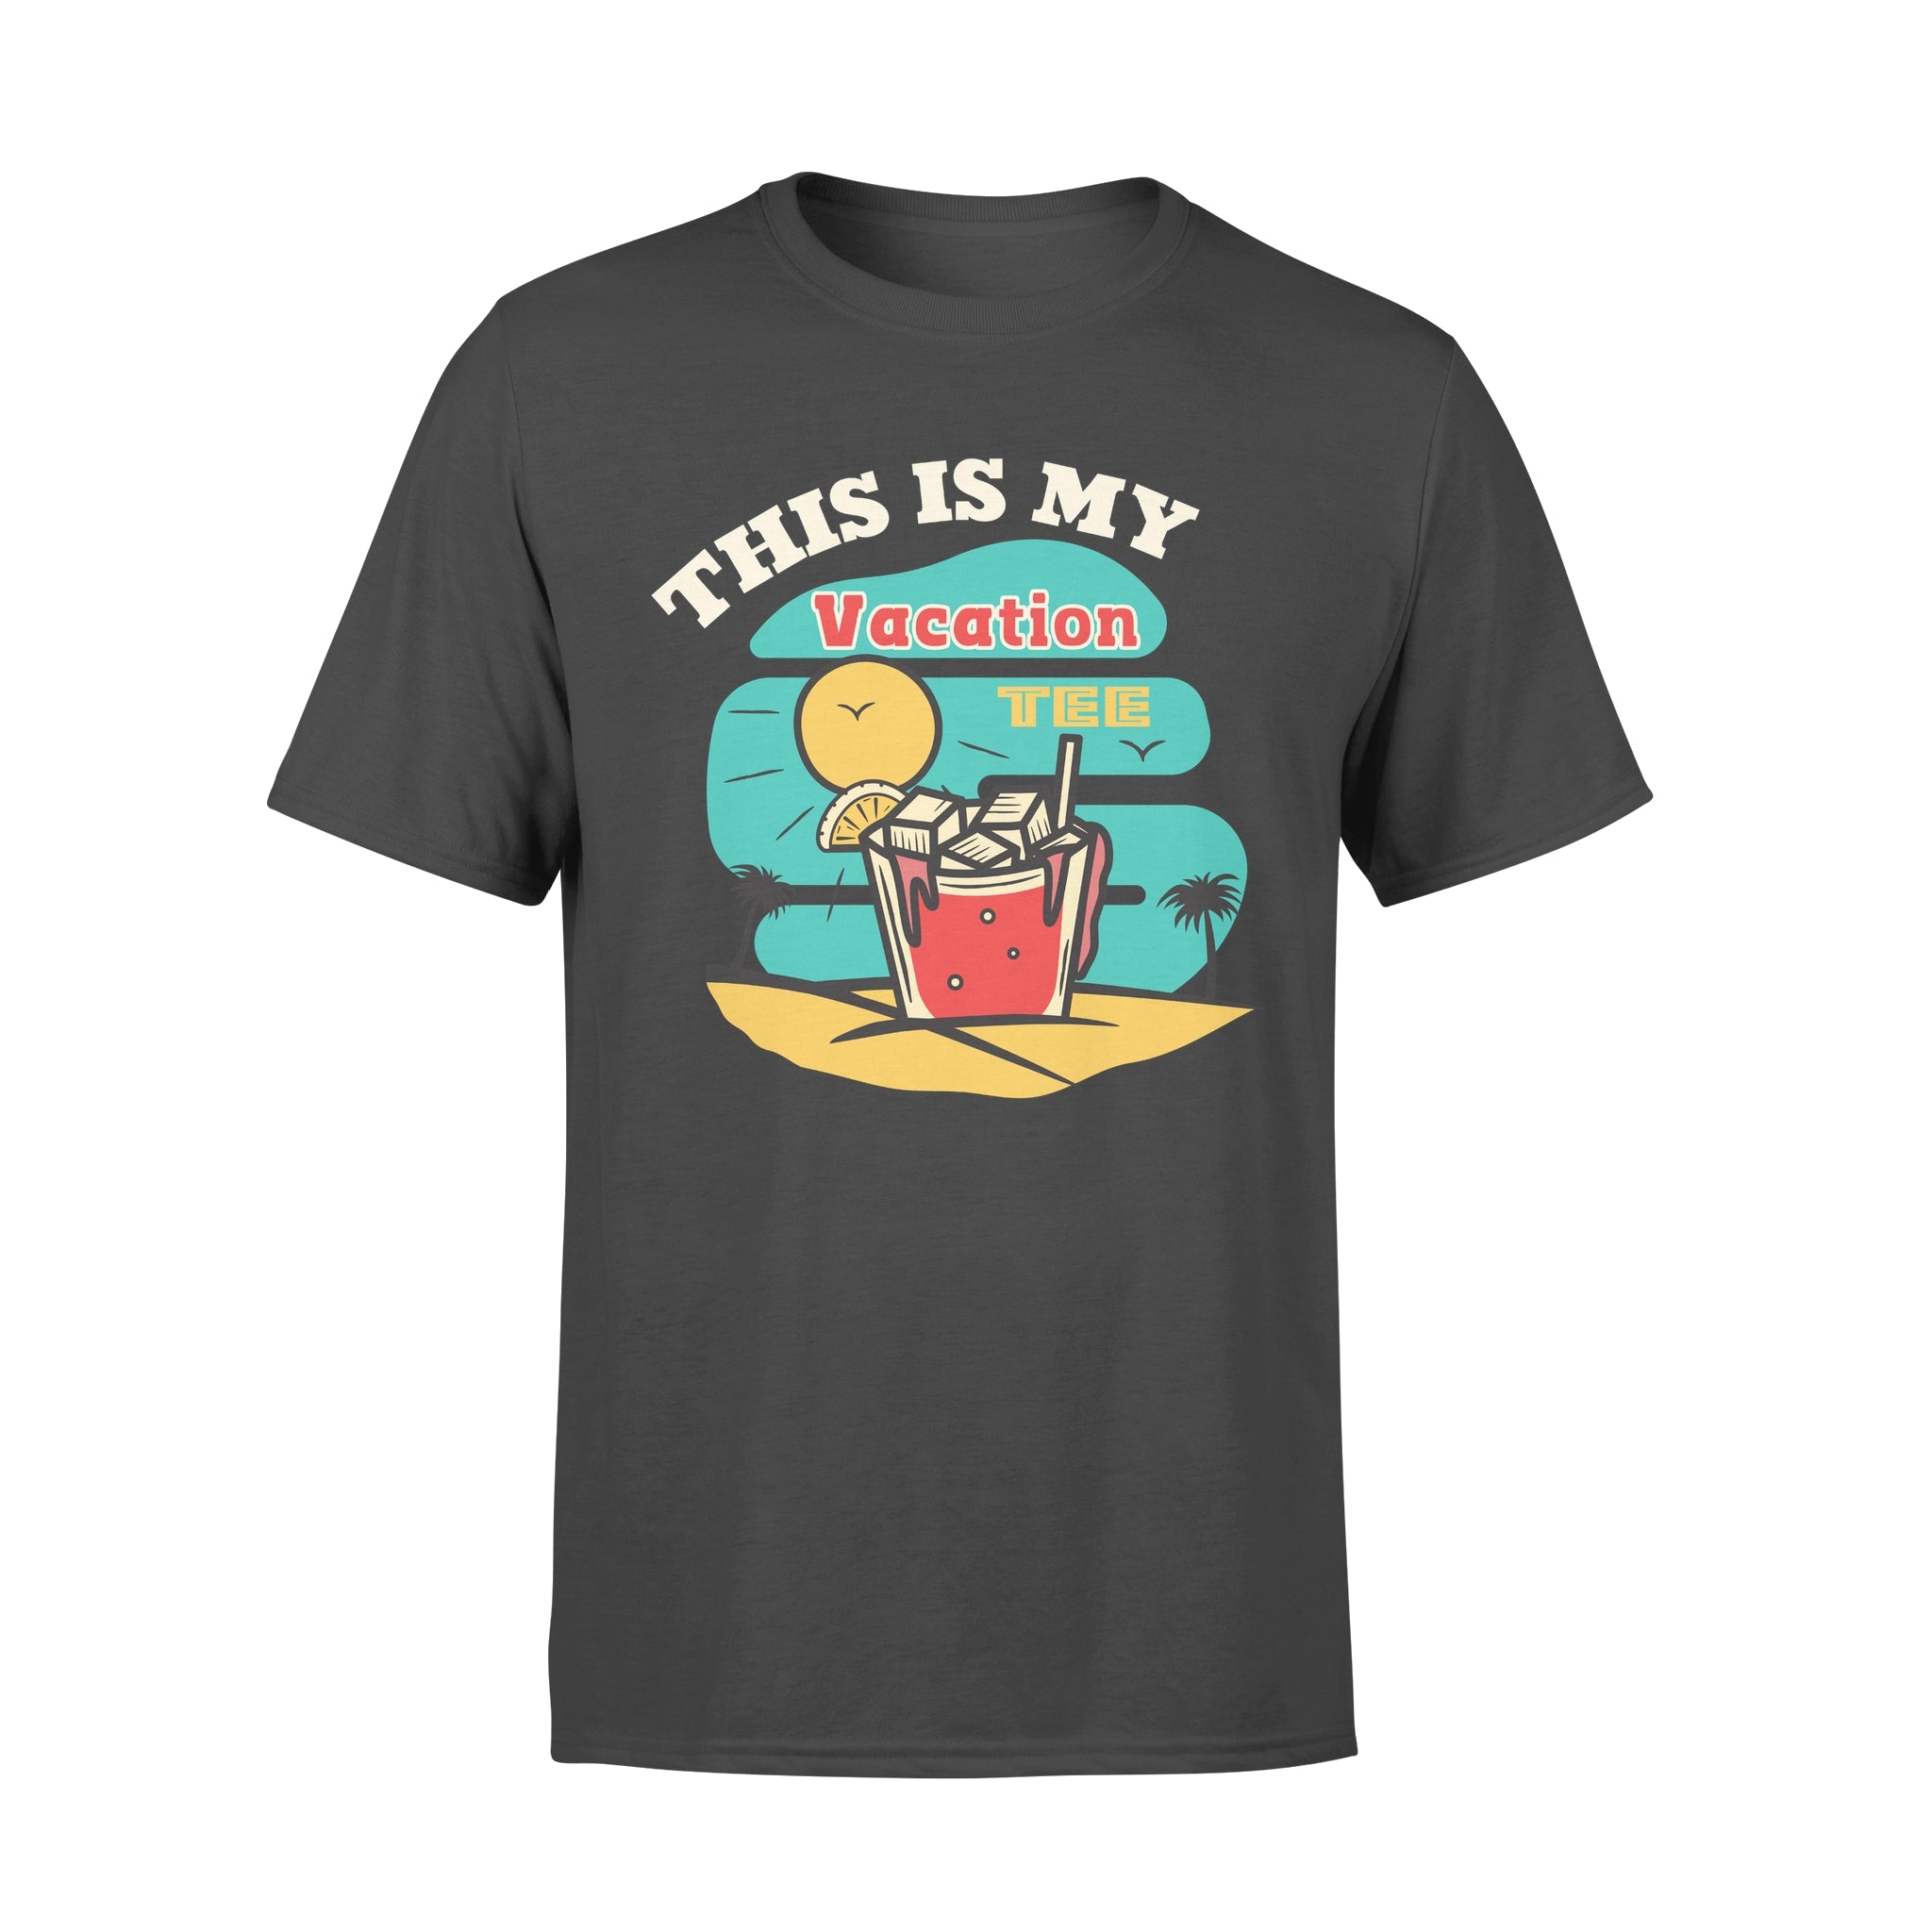 Vacation Tee - T-shirt